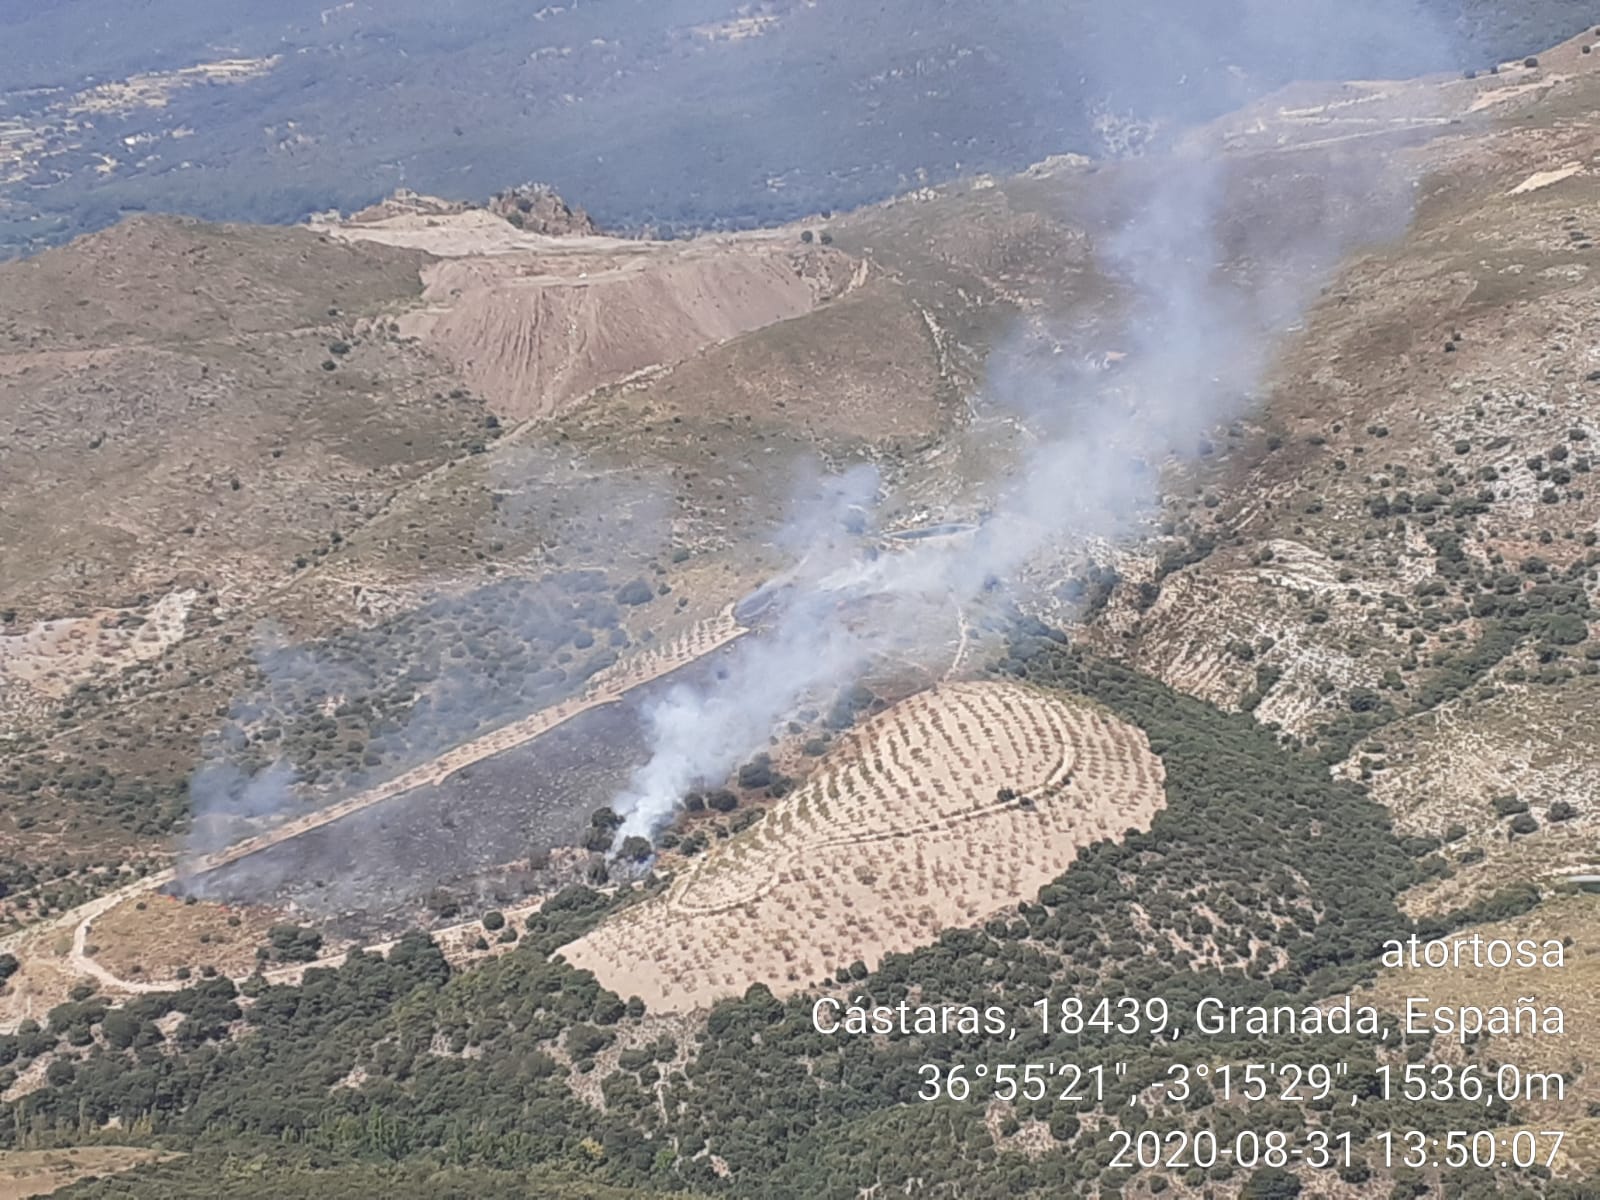 Declarados dos incendios forestales, uno en Motril y otro en Cástaras